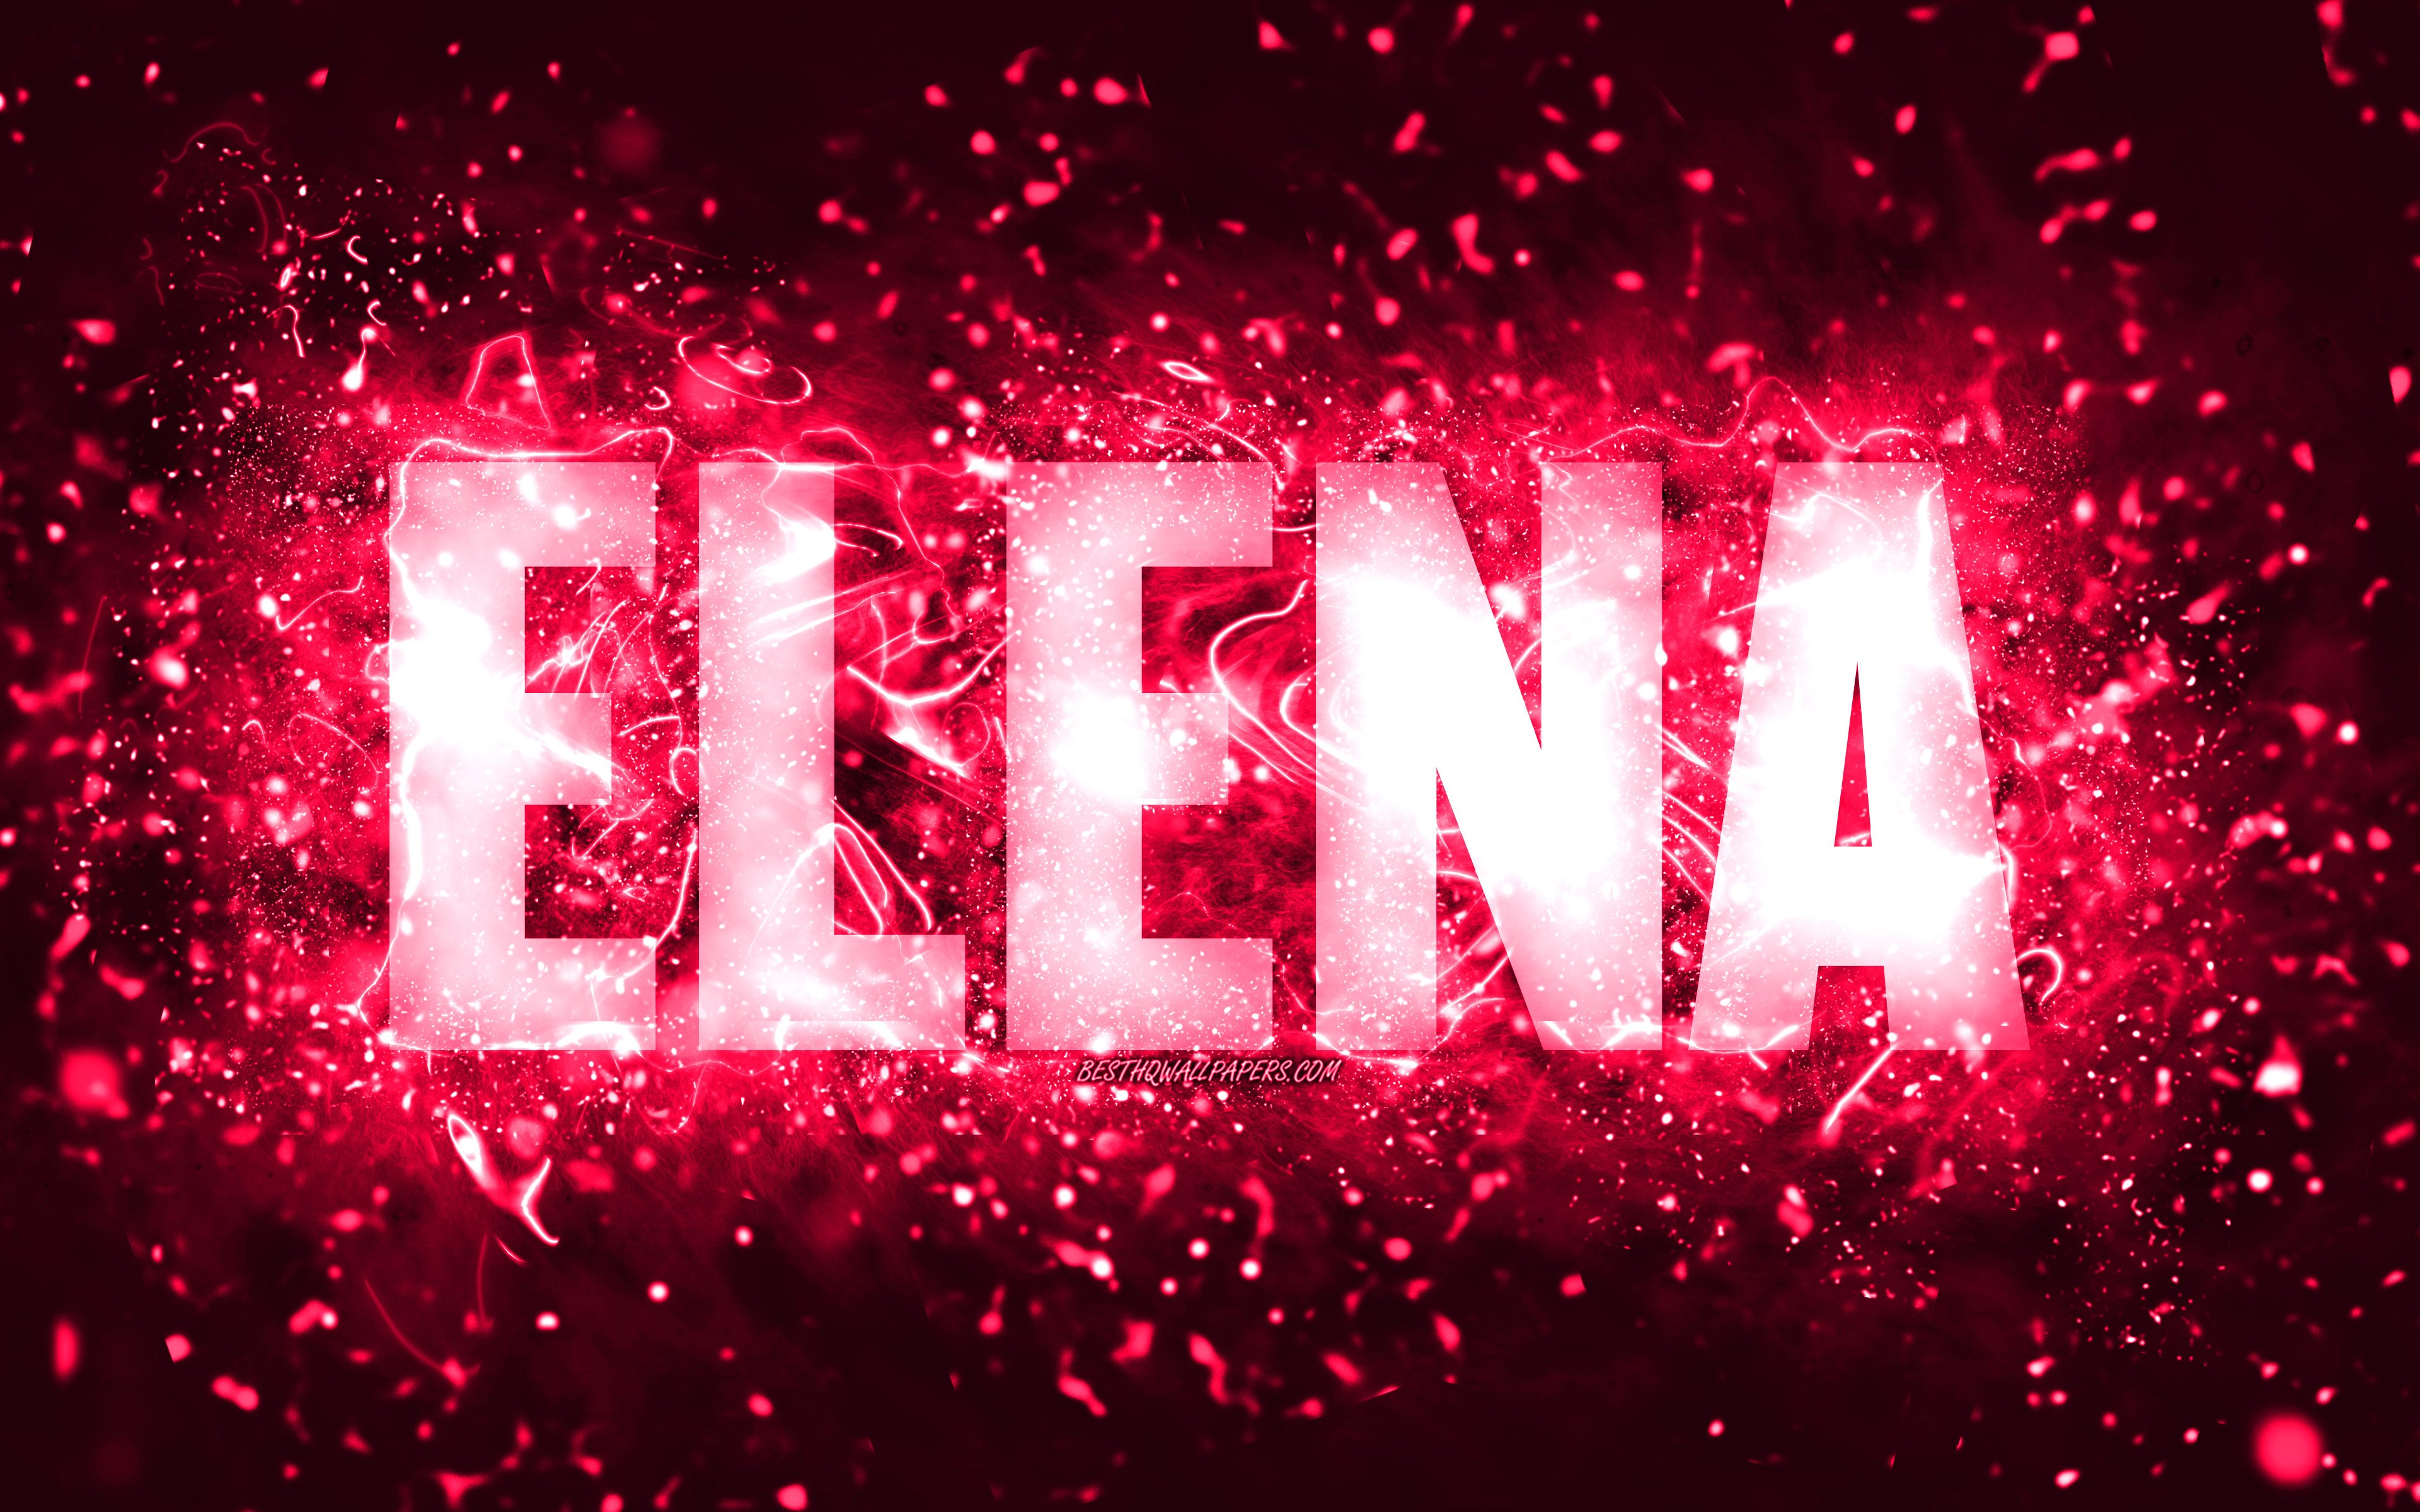 Elena name